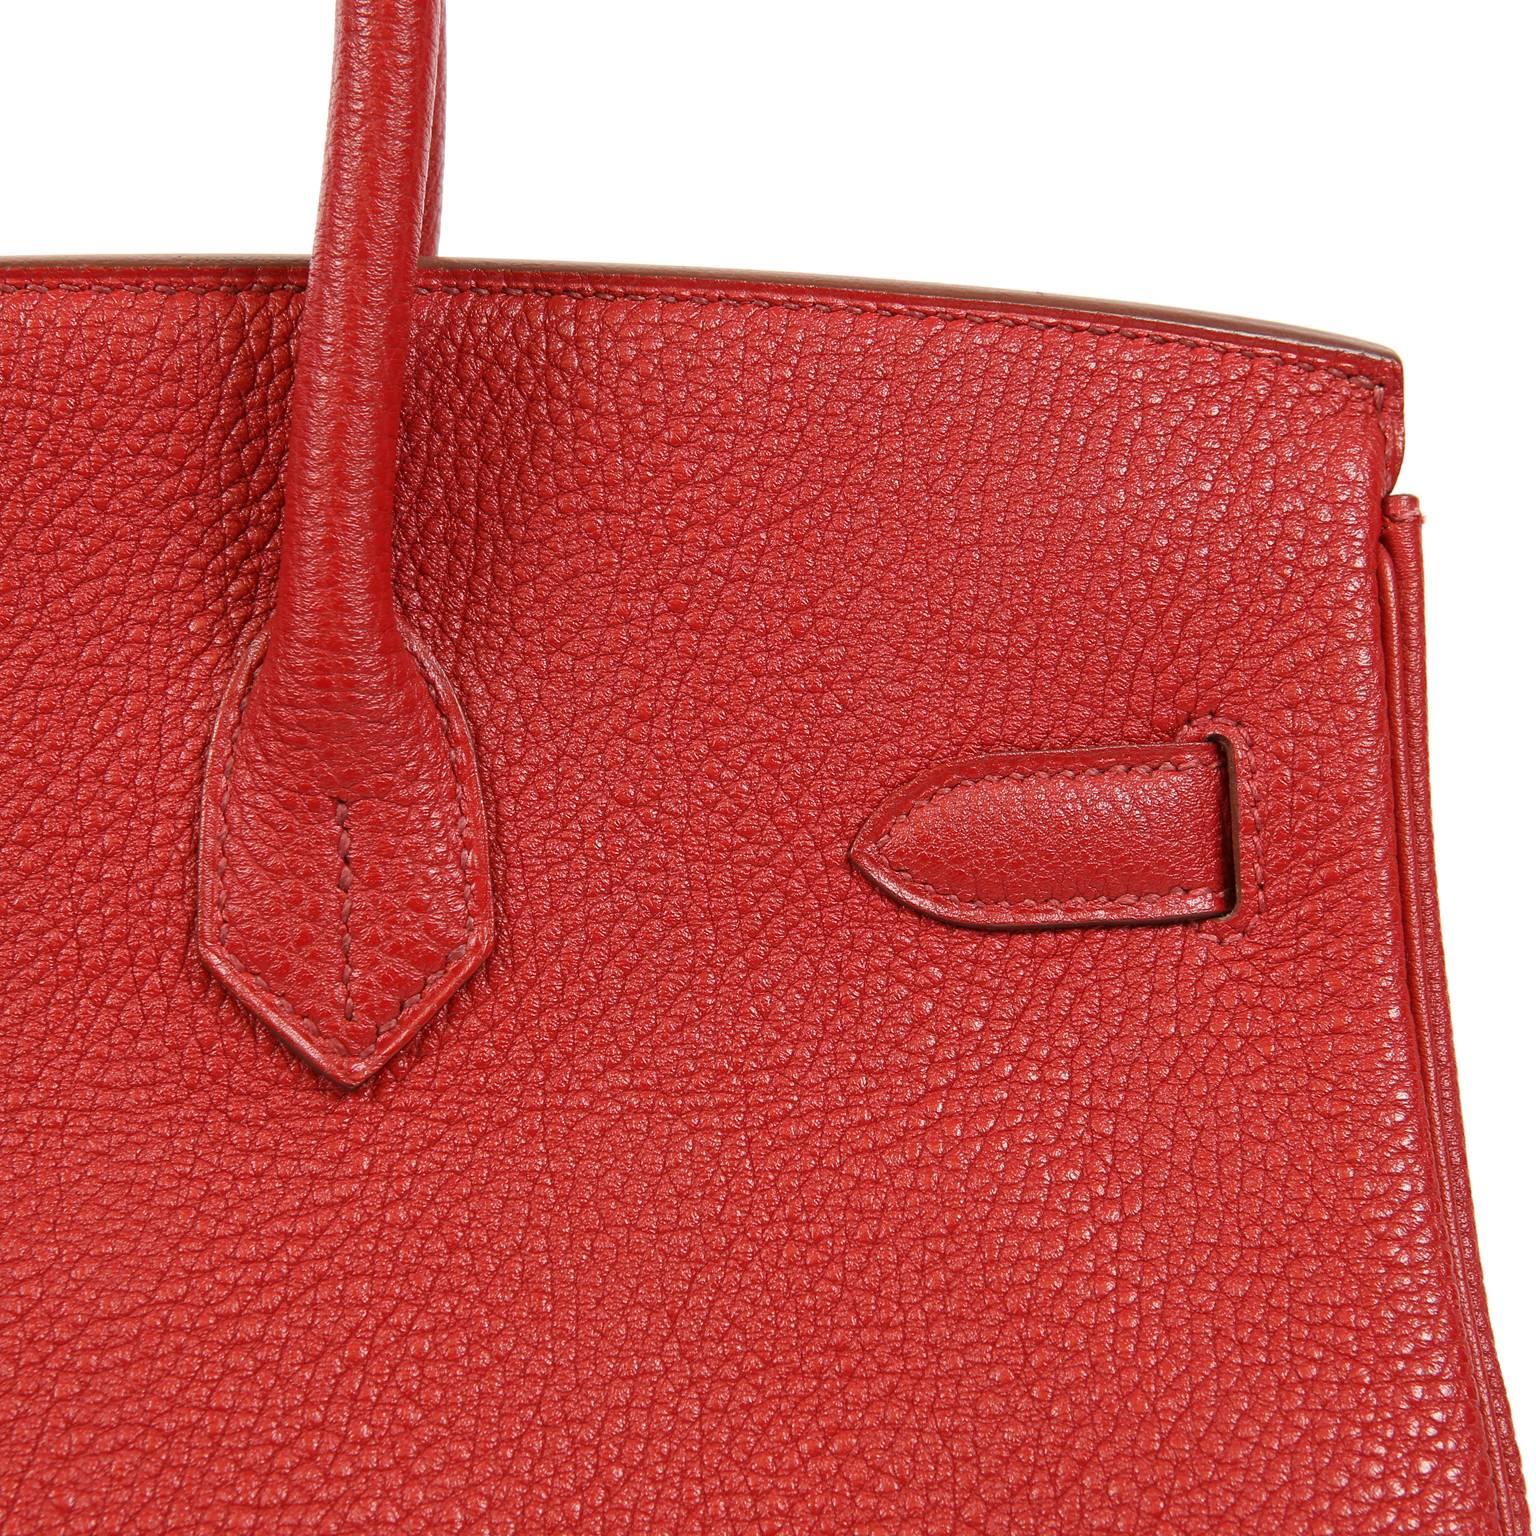 Hermes Rouge H Togo Horseshoe 35 cm Birkin Bag- GHW For Sale 5